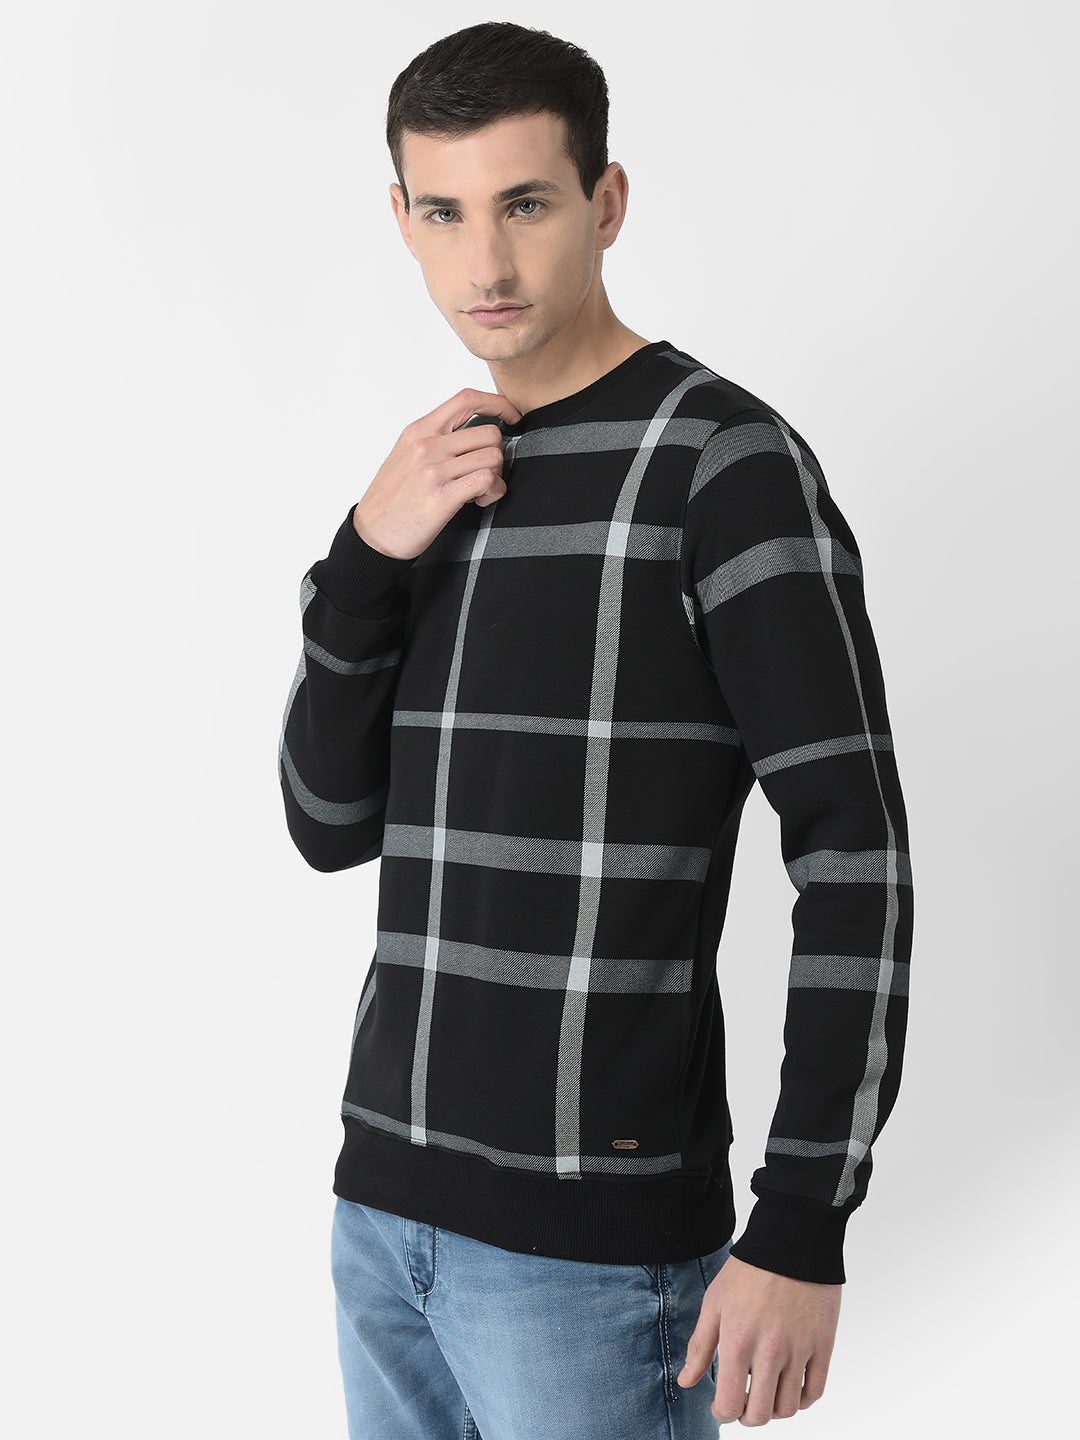  Black Checkered Sweatshirt 